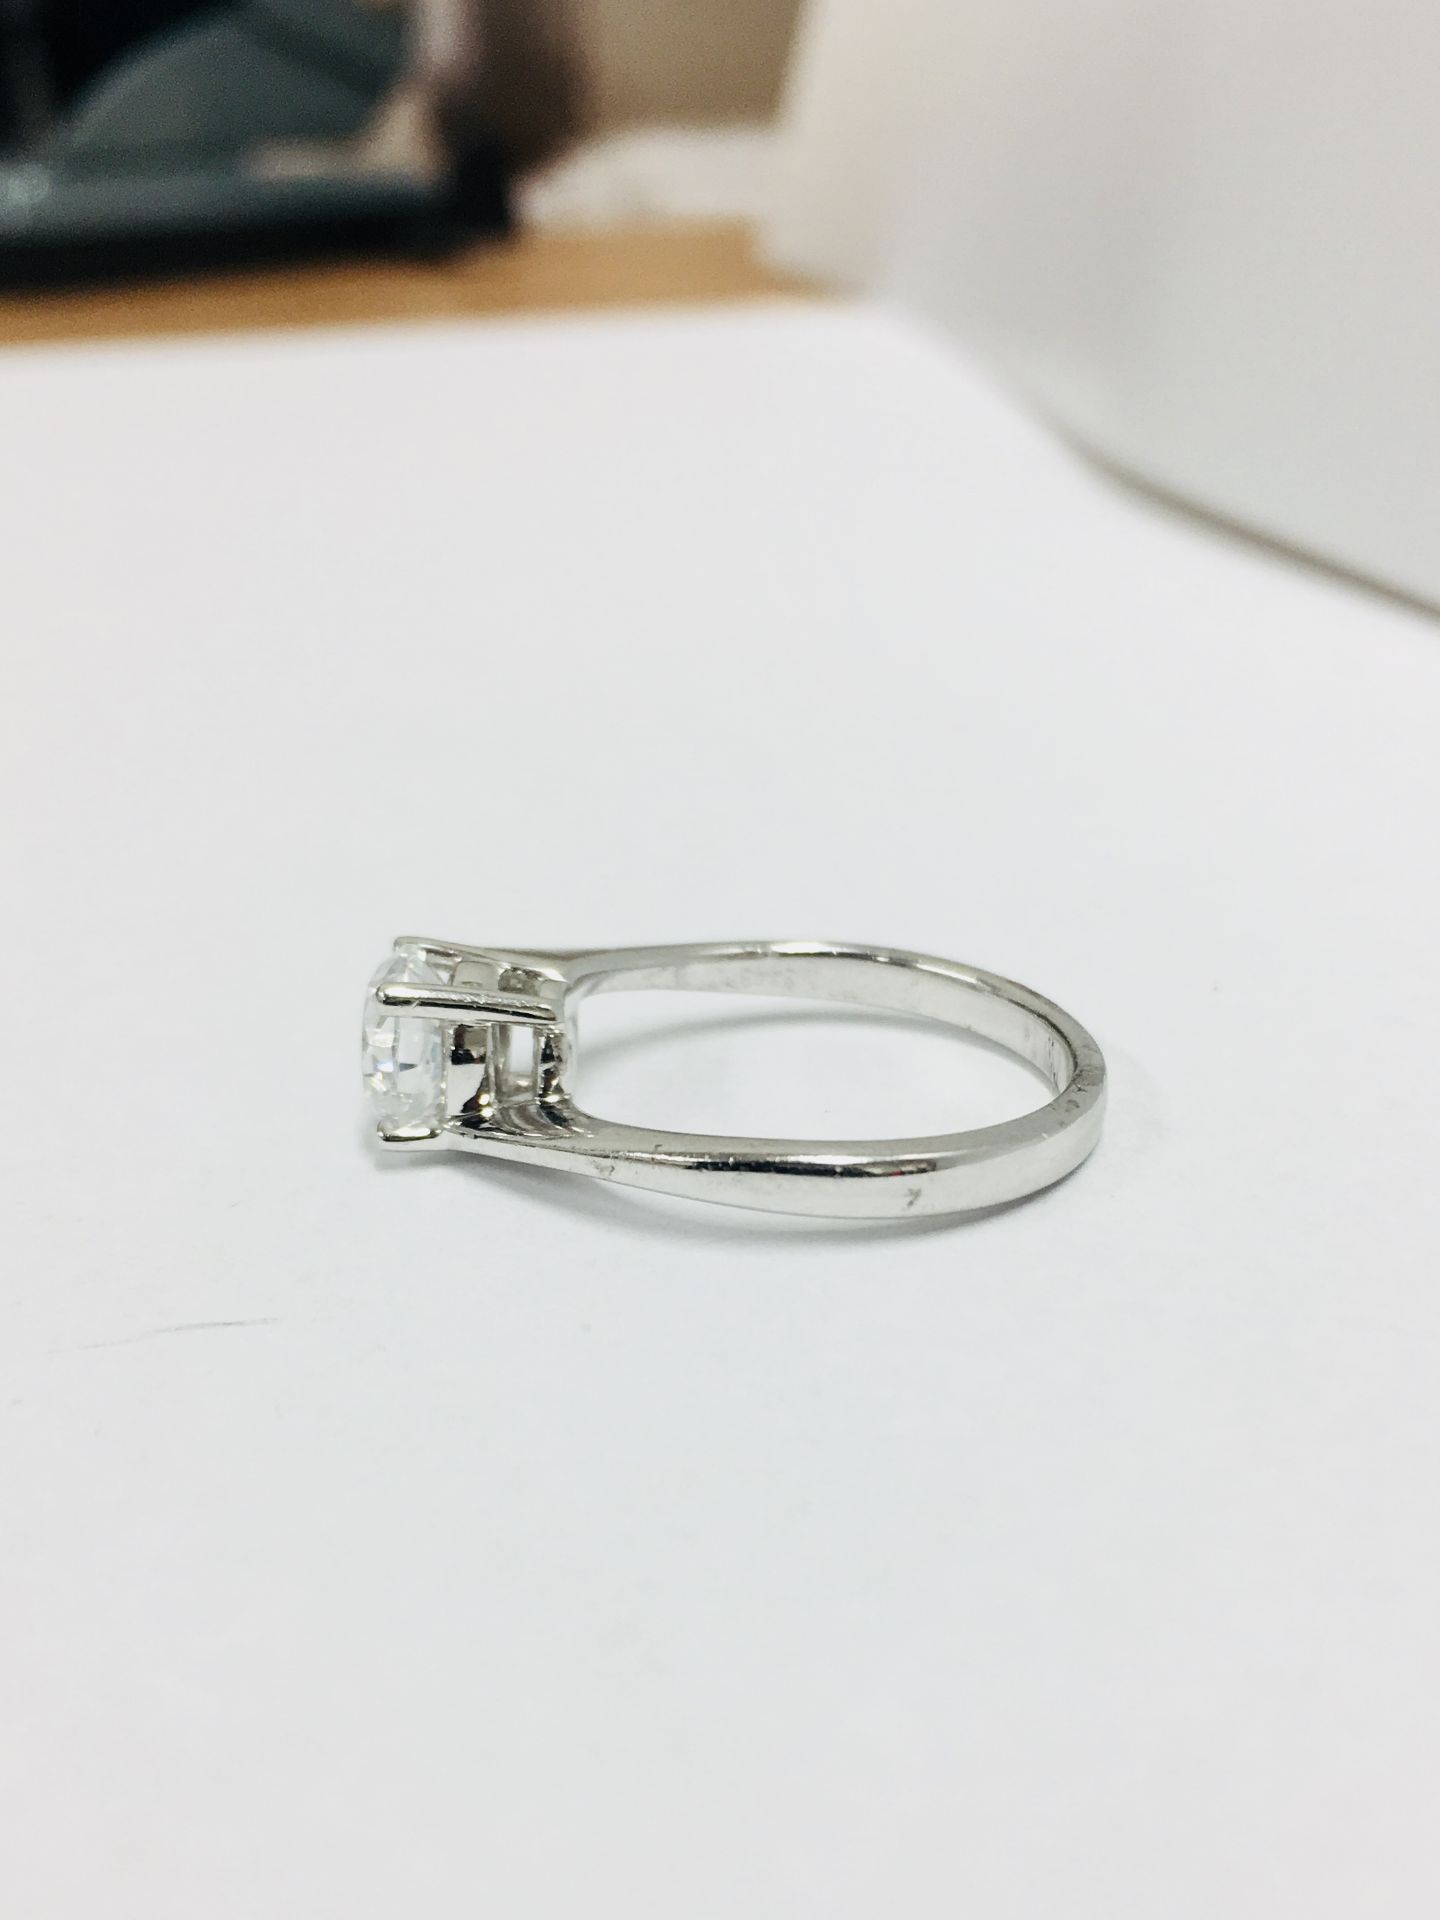 platinum twist solitaire ring,0.50ct brilliant cut diamond vs clarity D colour,platinum 2.9gms 950, - Image 2 of 5